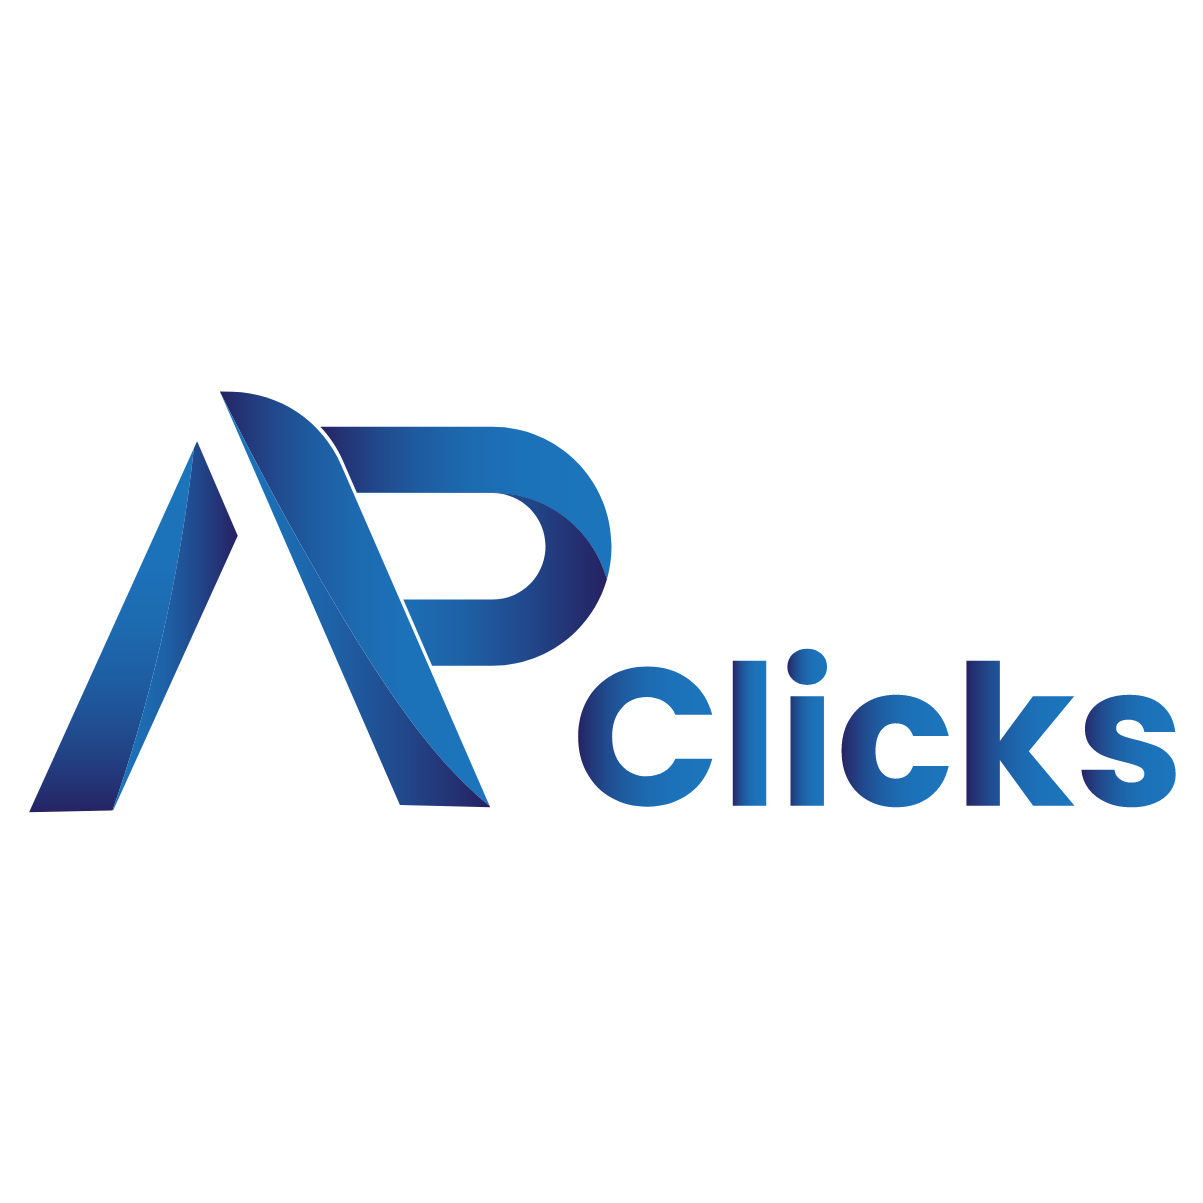 Blue logo AP Clicks